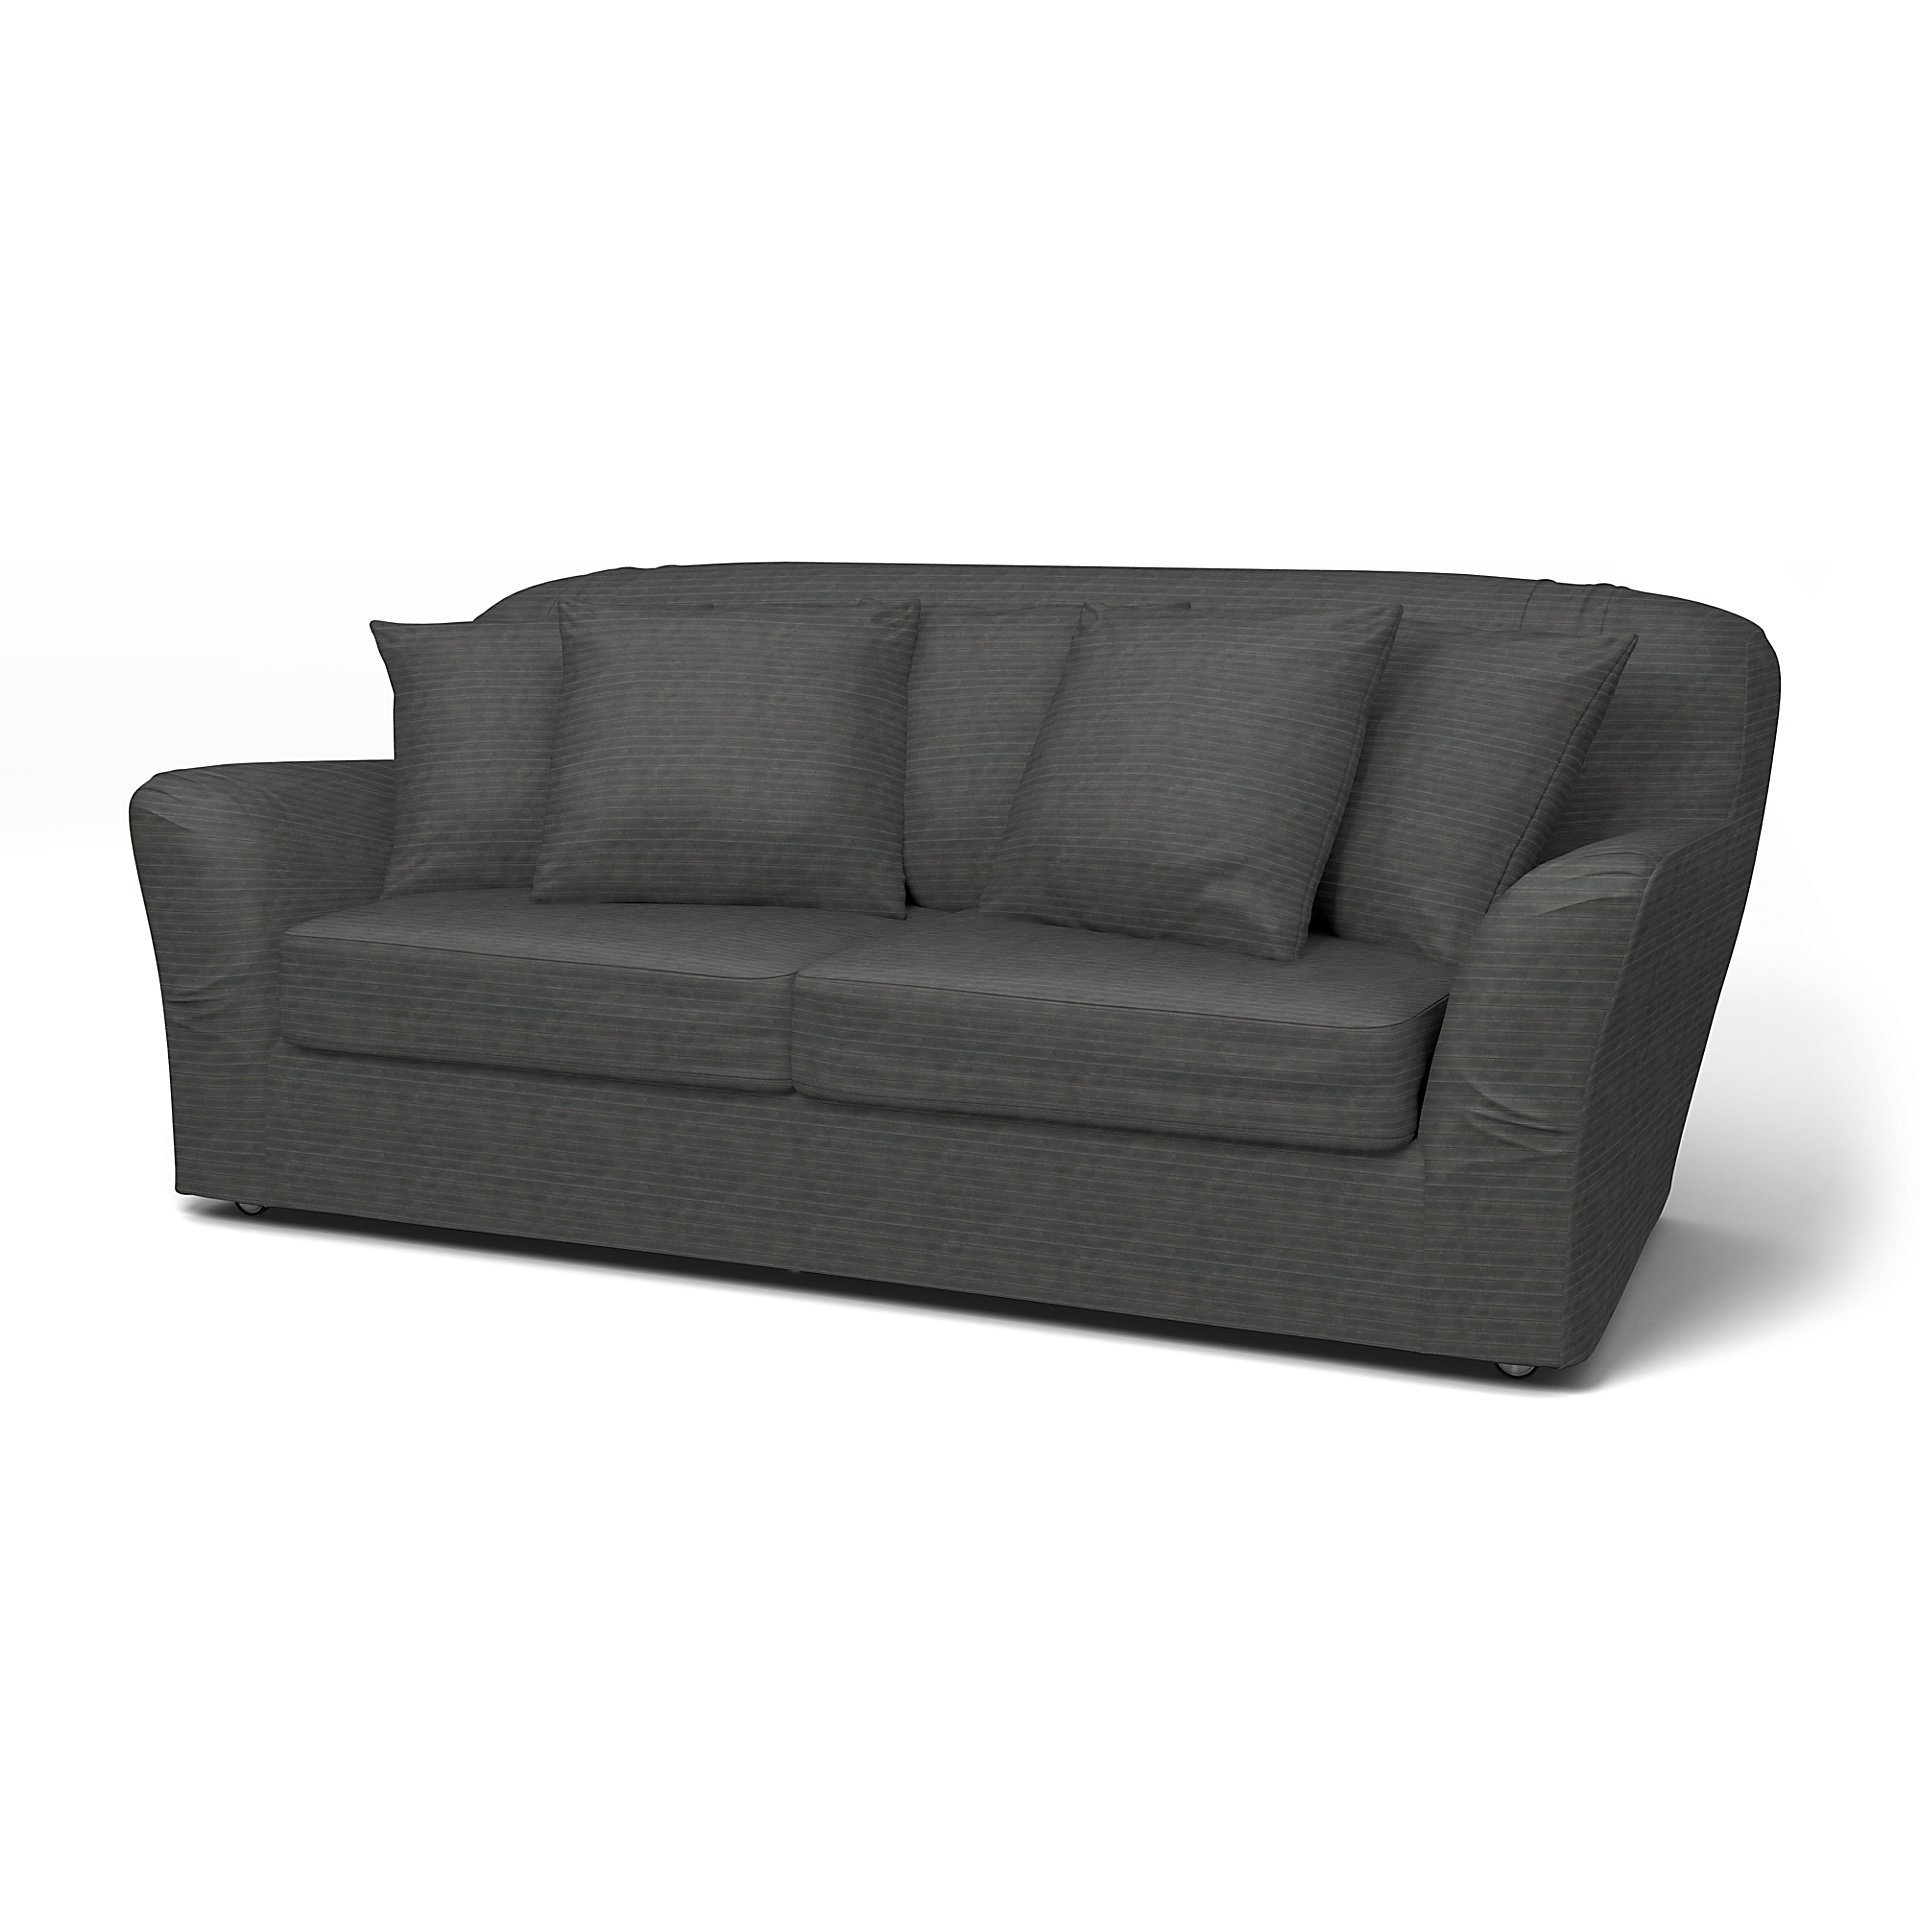 IKEA - Tomelilla Sofa Bed Cover (Small model), Licorice, Corduroy - Bemz